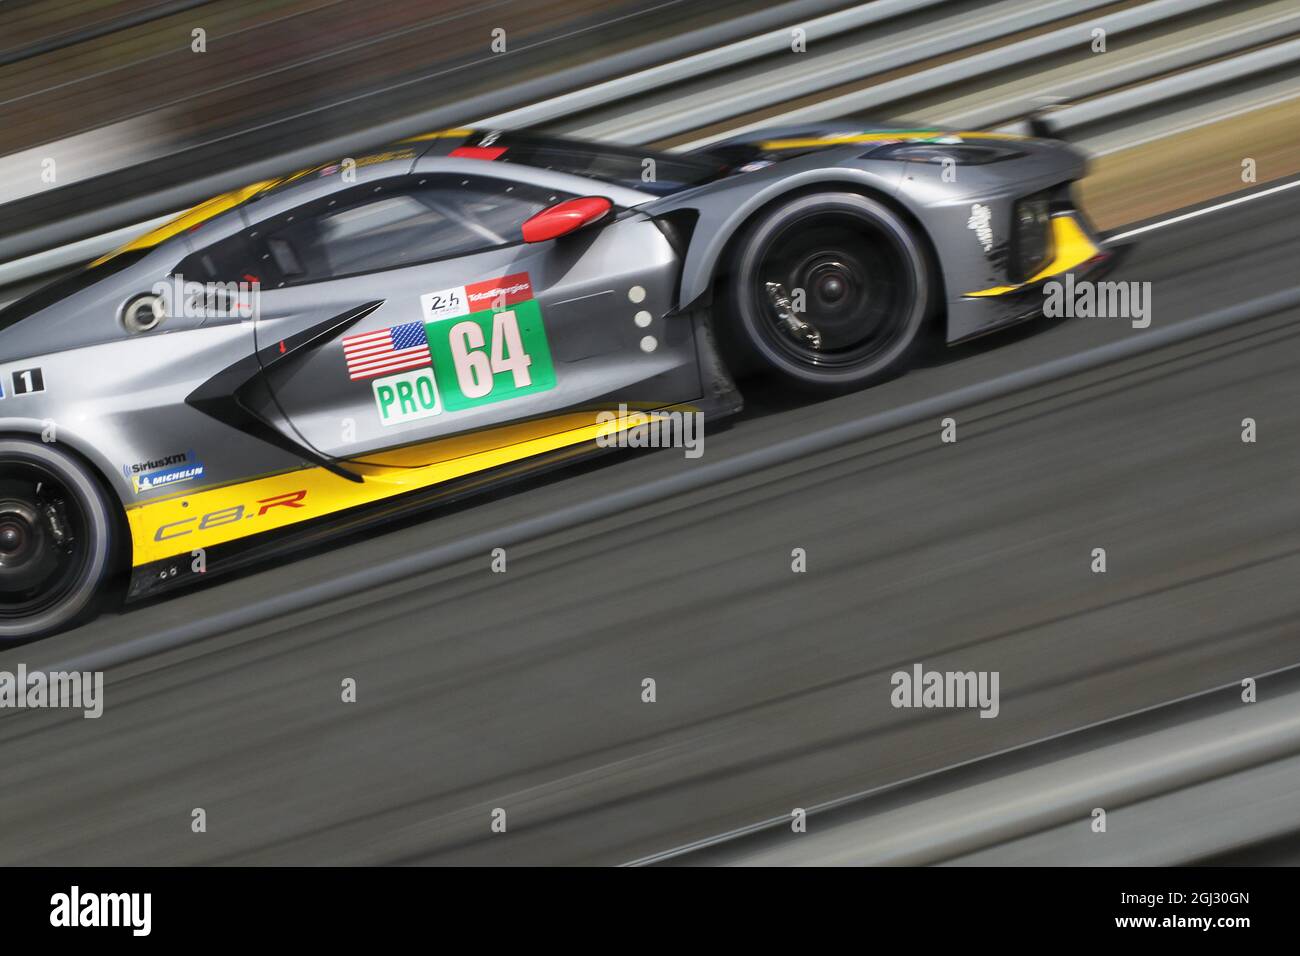 LE MANS 24 hrs 2021 - Corvette racing team Stock Photo